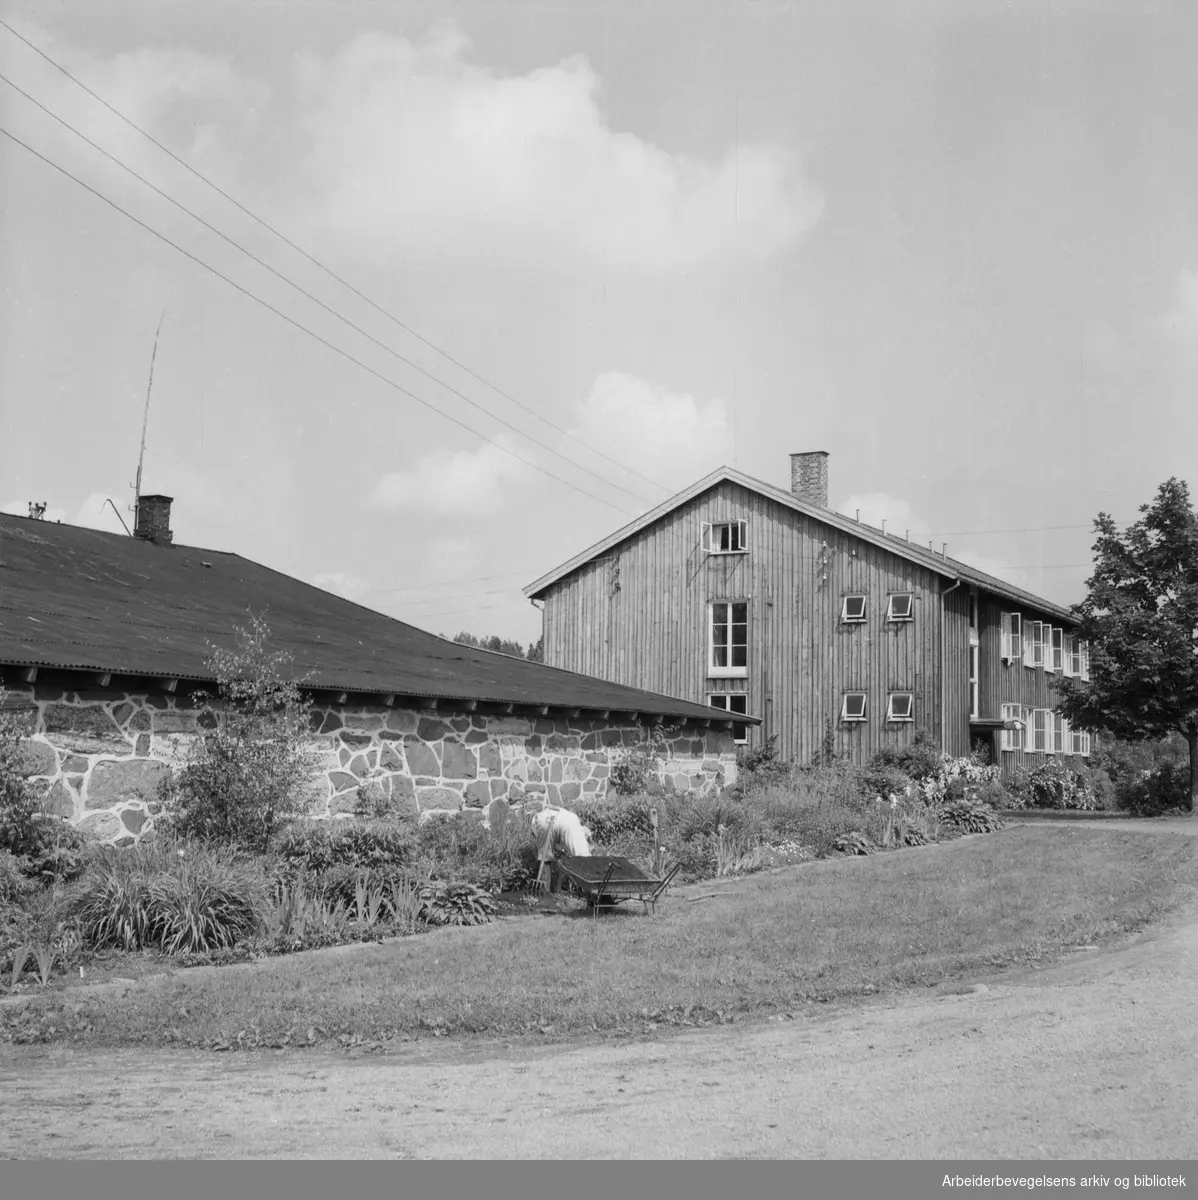 Norsk Gartnerforening holdt befaring for pressen hos Johs. Faale på Ballerud gård i Bærum. Juni 1953.